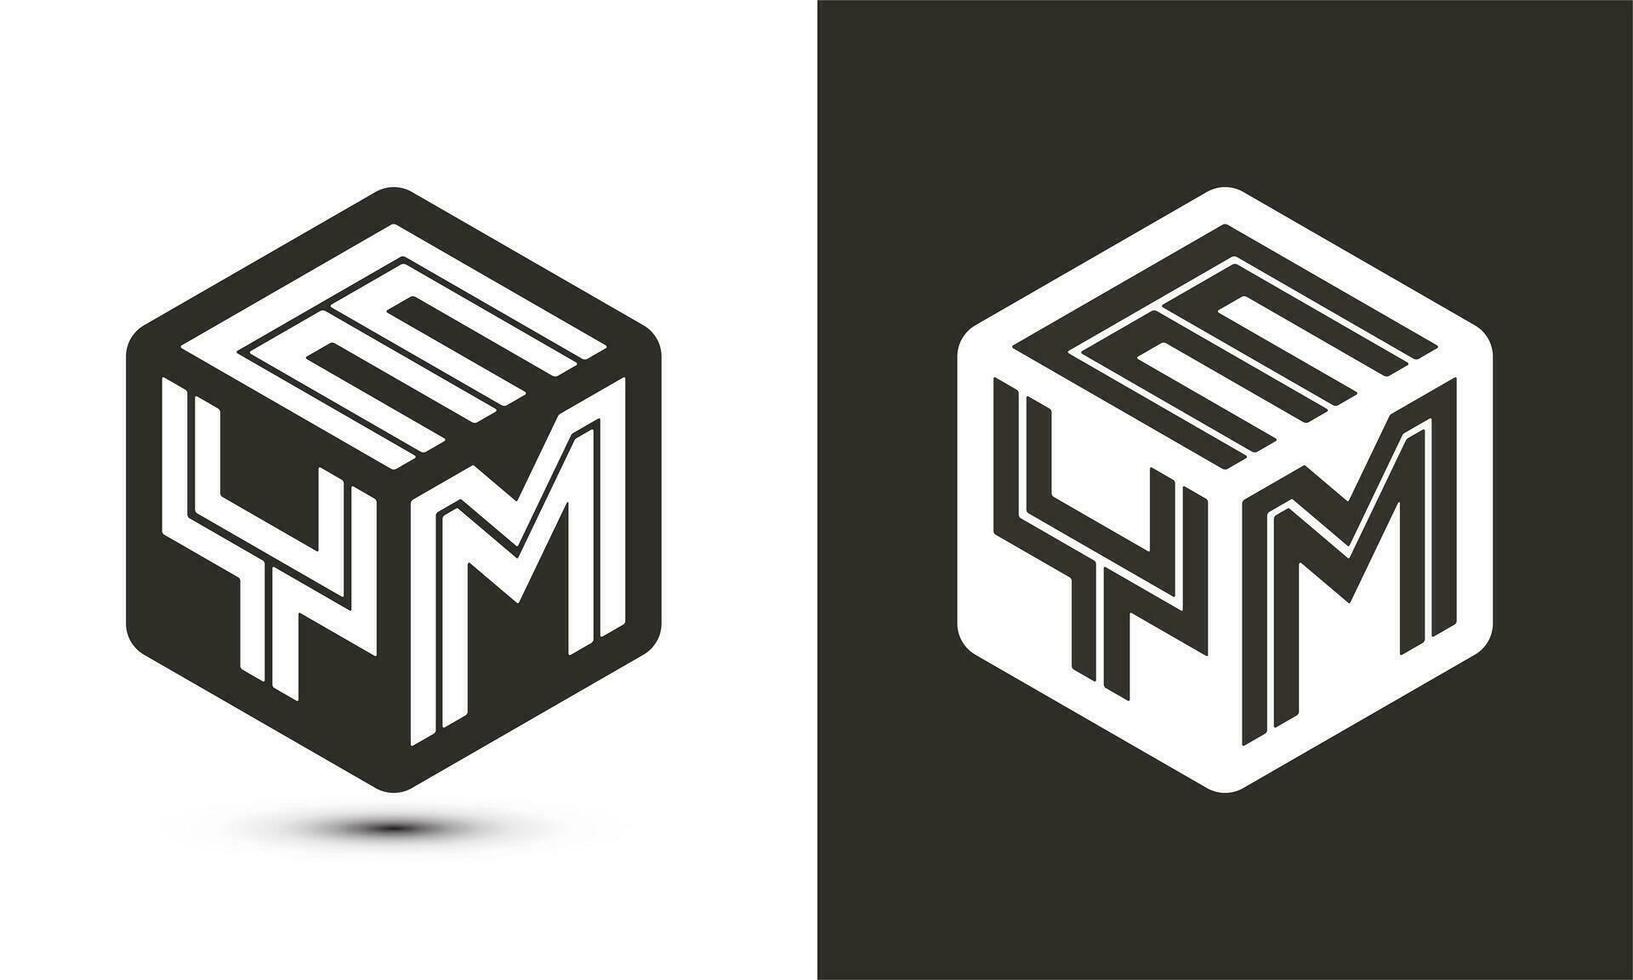 eym brev logotyp design med illustratör kub logotyp, vektor logotyp modern alfabet font överlappning stil.